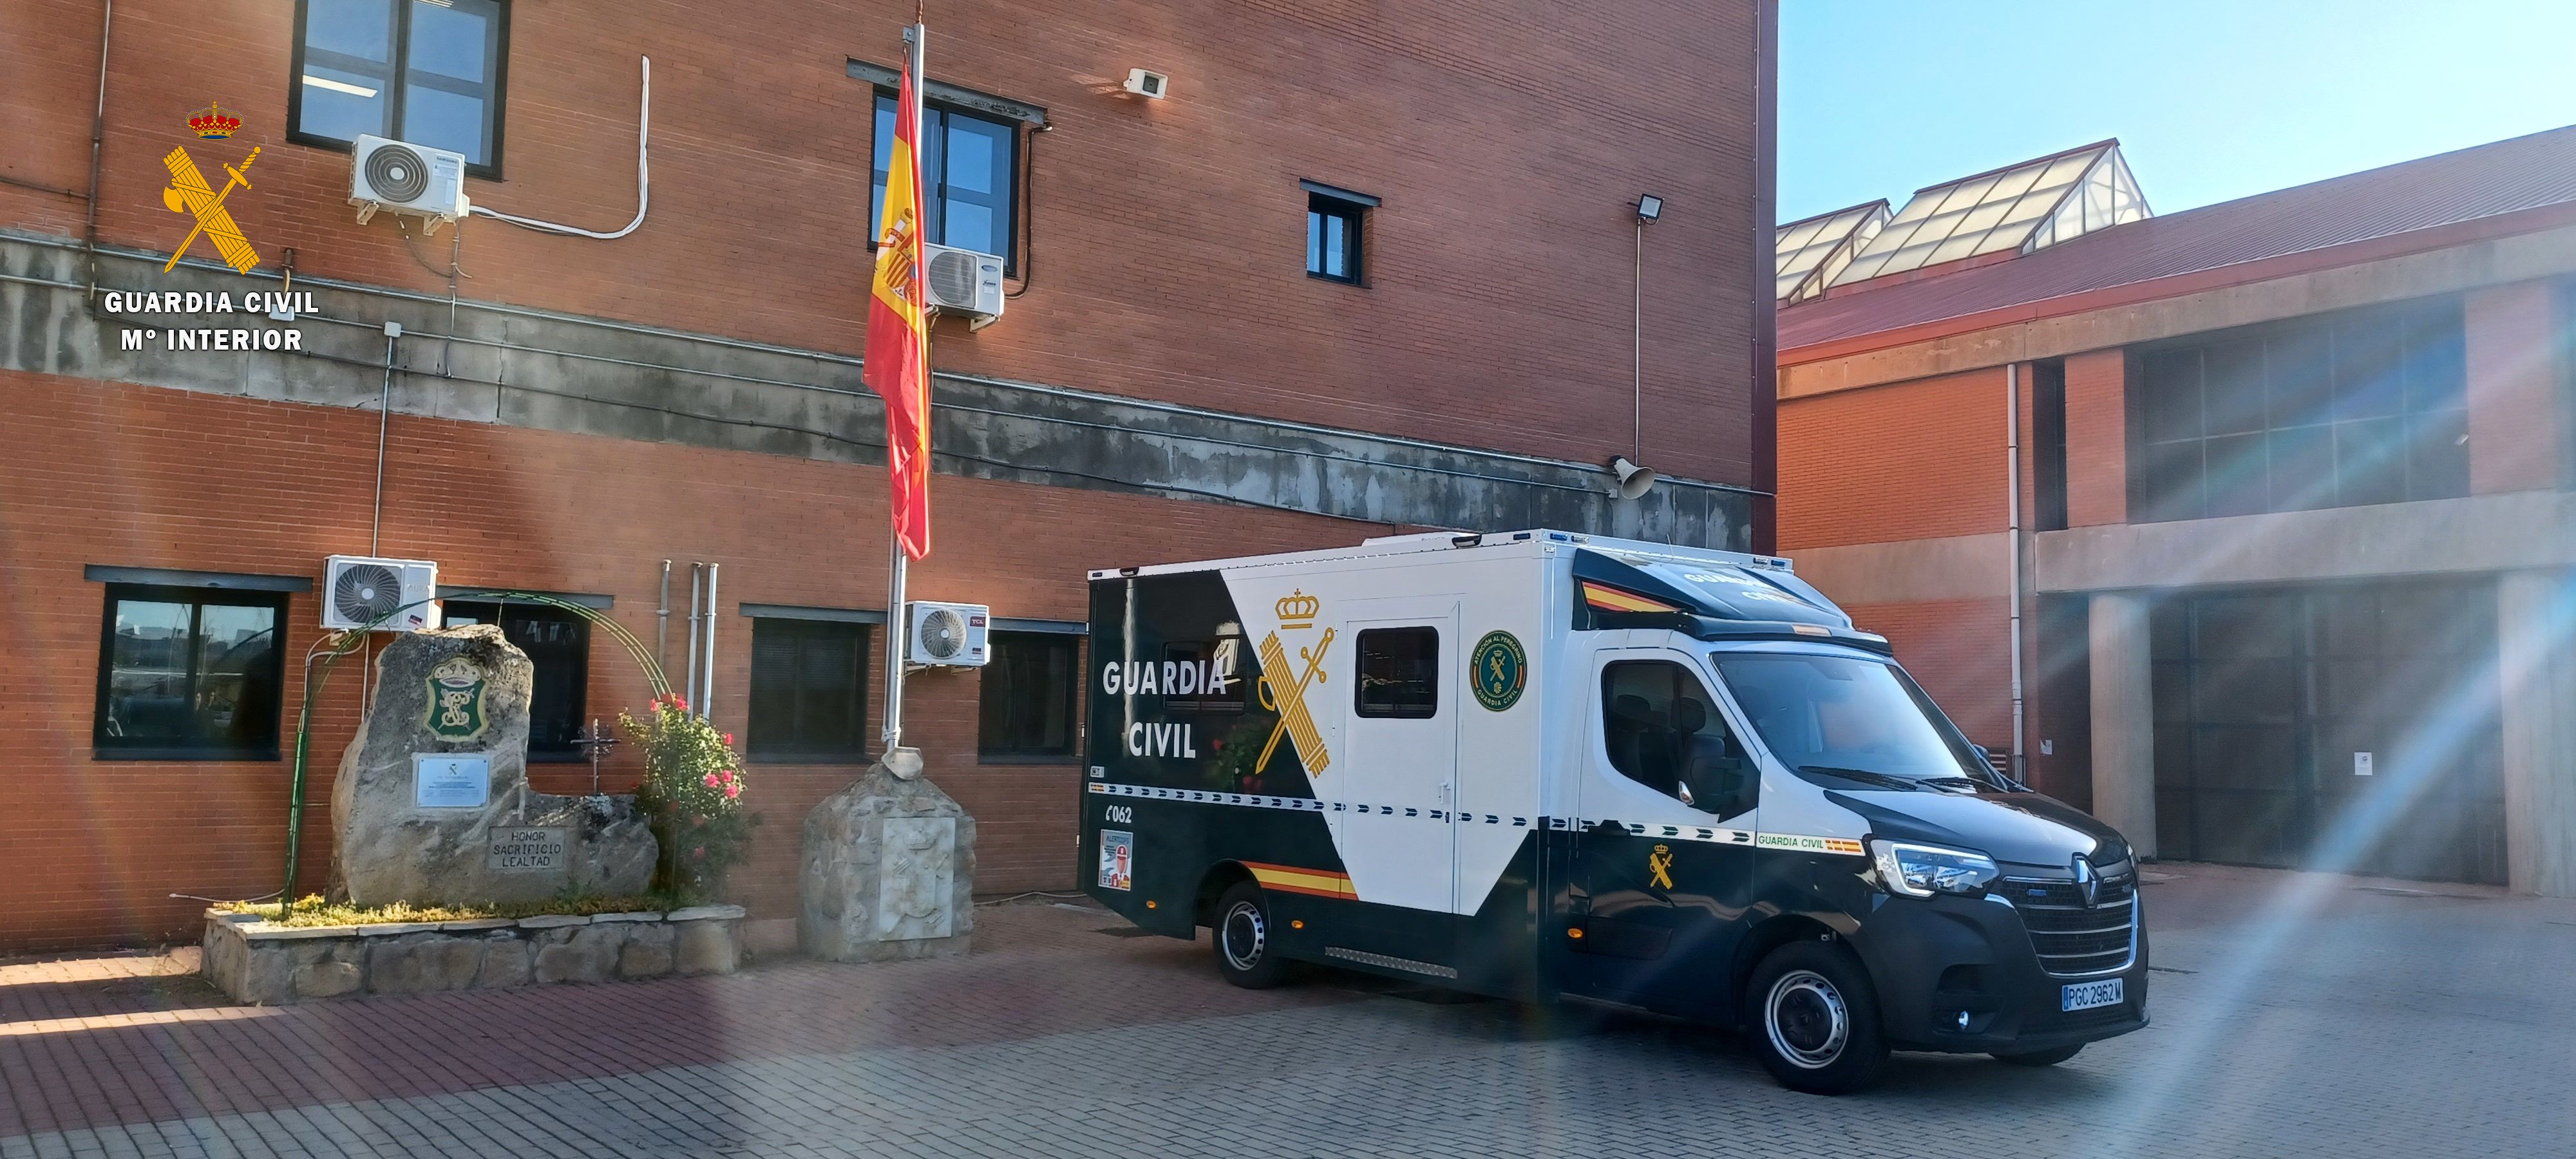 La Guardia Civil de Salamanca presenta la nueva oficina móvil de atención a la ciudadanía